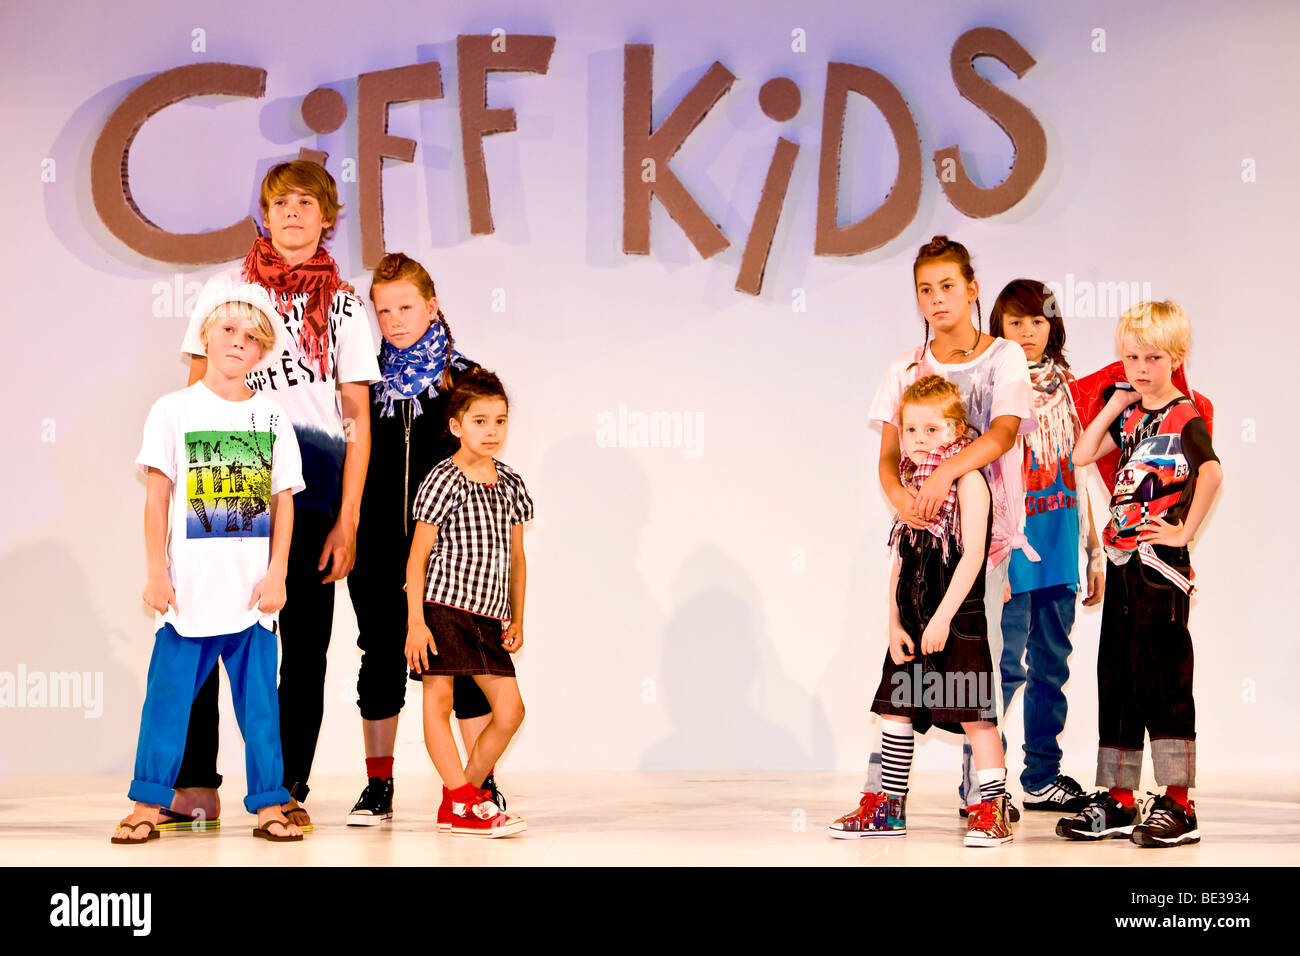 Children's fashion show Ciff Kids Stock Photo